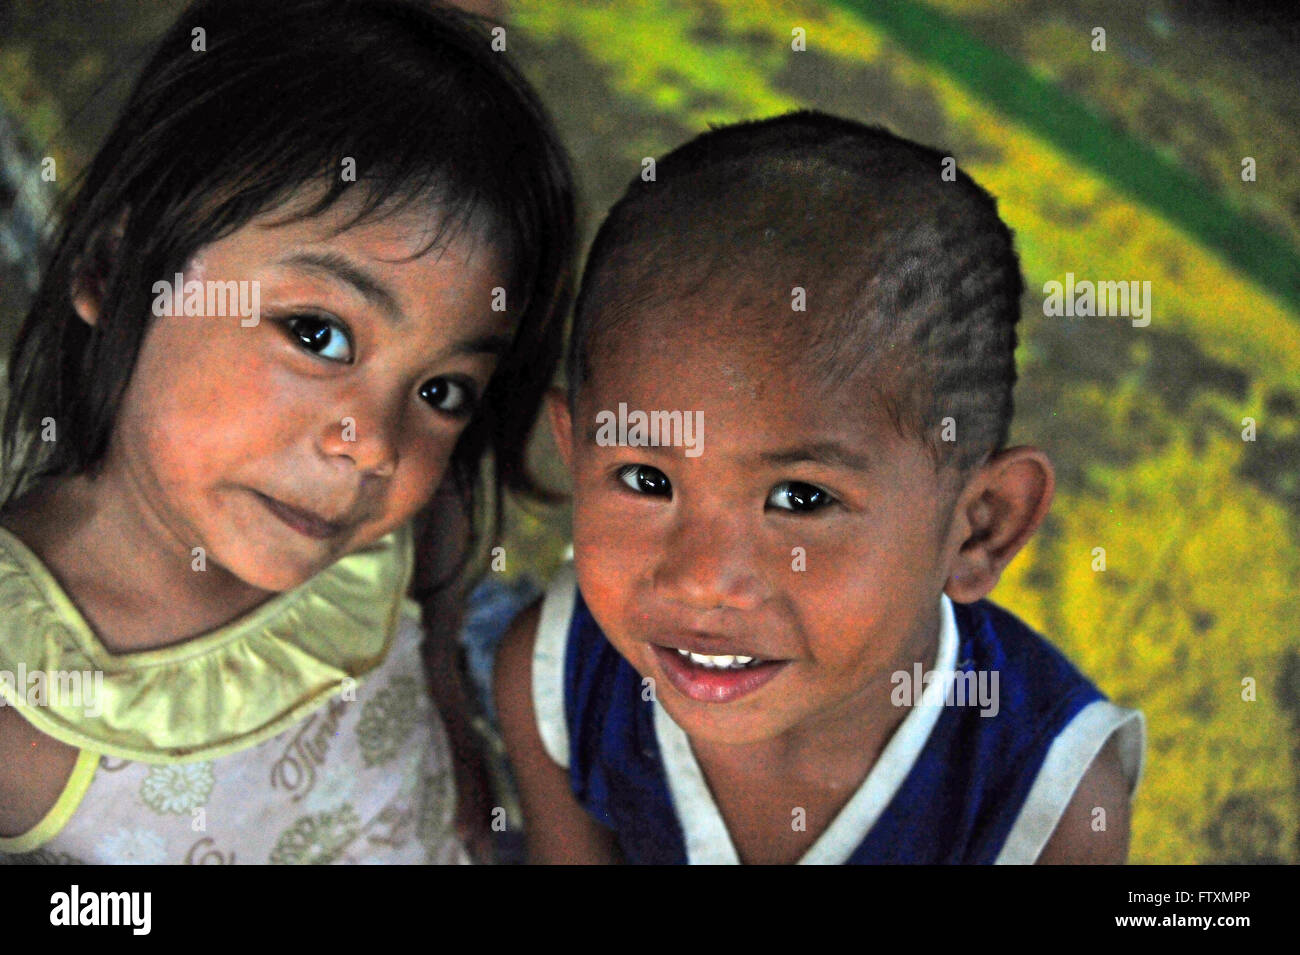 Los niños en la Ciudad de Cebu, Cebu, Filipinas. Foto de stock